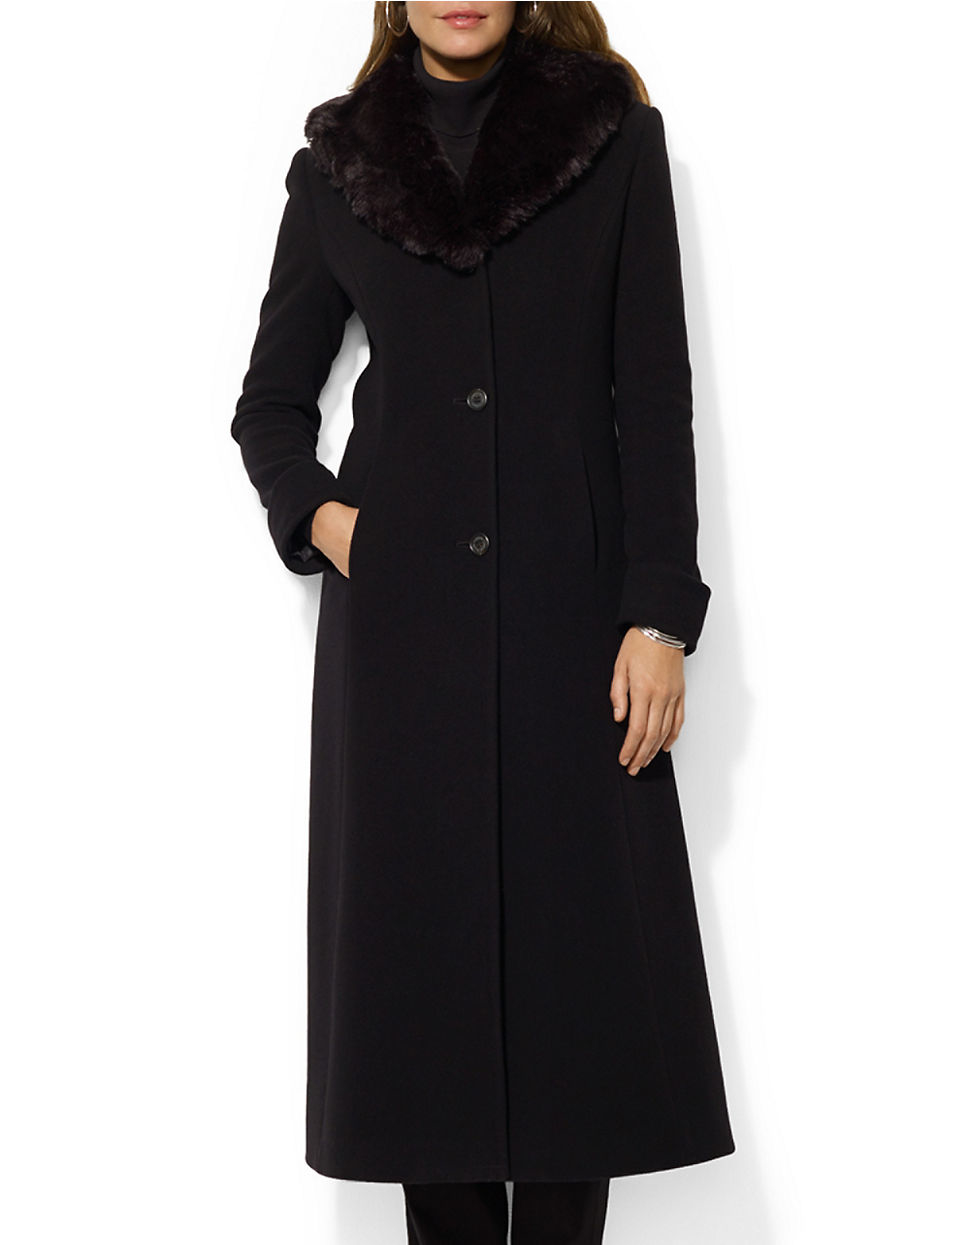 Lauren by ralph lauren Wool-blend Faux-fur Trimmed Coat in Black | Lyst